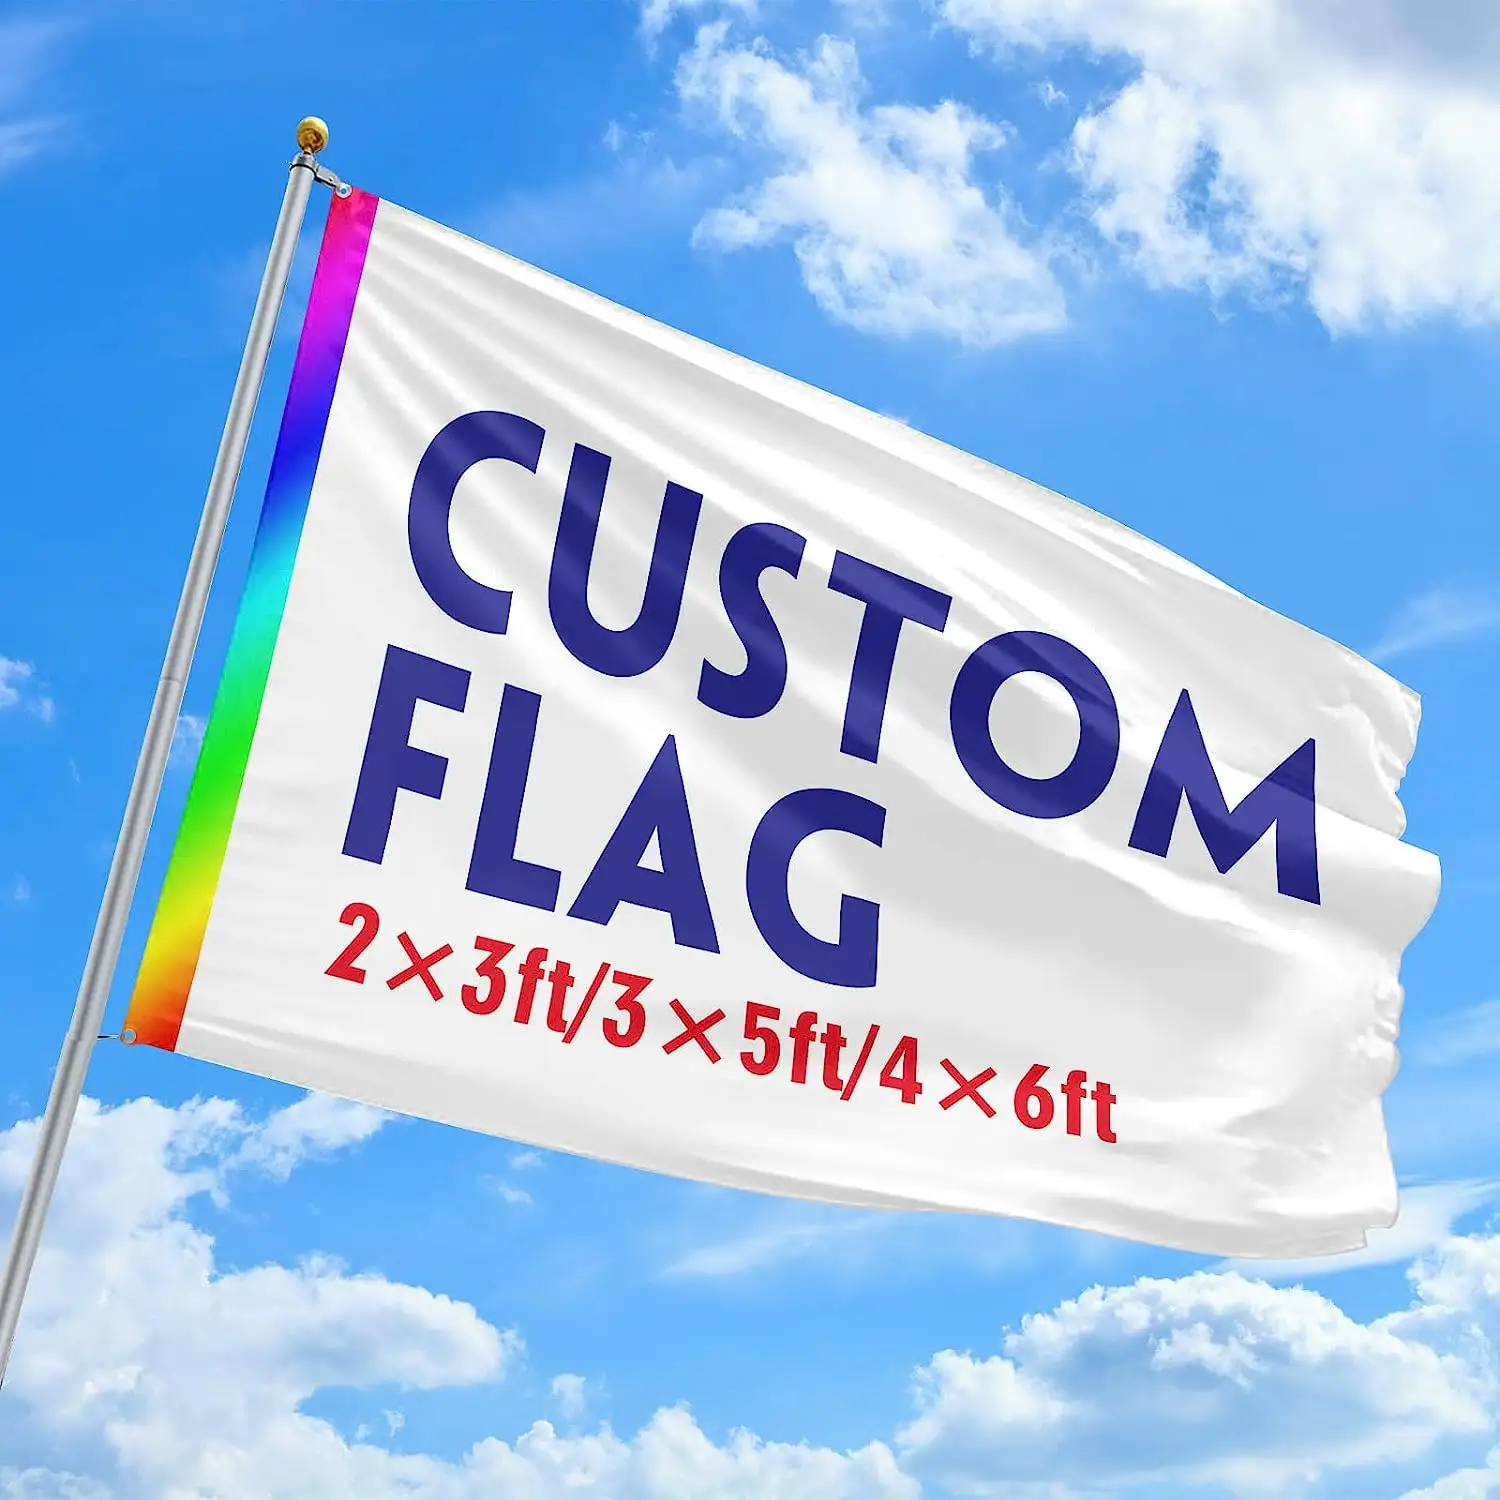 ธงสำหรับงานกิจกรรมใดๆธงประเทศทุกประเทศแบบสั่งทำพร้อมโลโก้ออกแบบได้ตามต้องการ